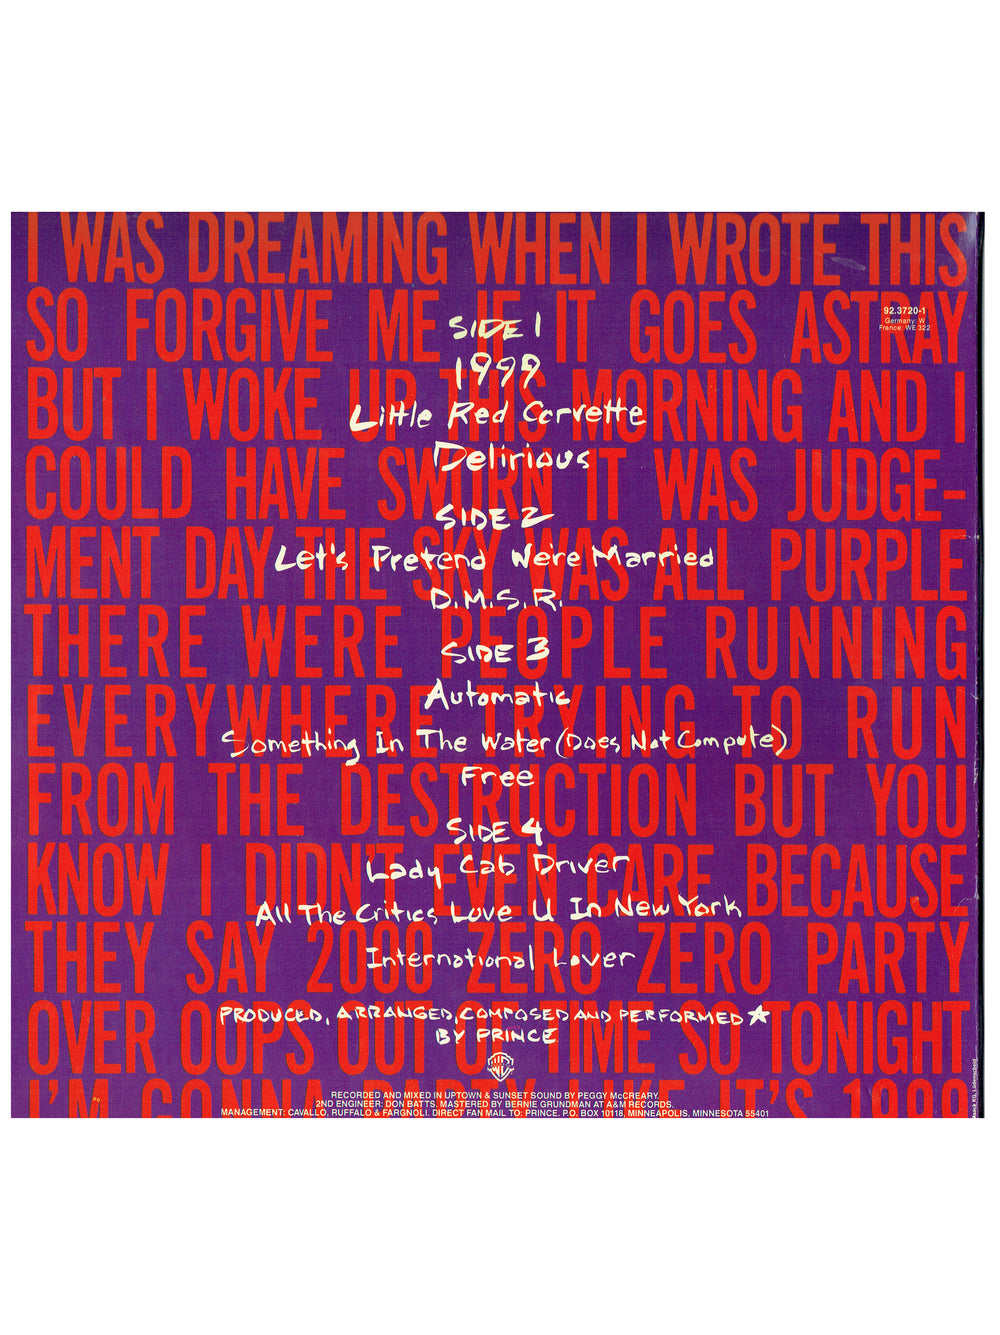 Prince & The Revolution 1999 Double Vinyl Album Original 1982 Release EU SMS